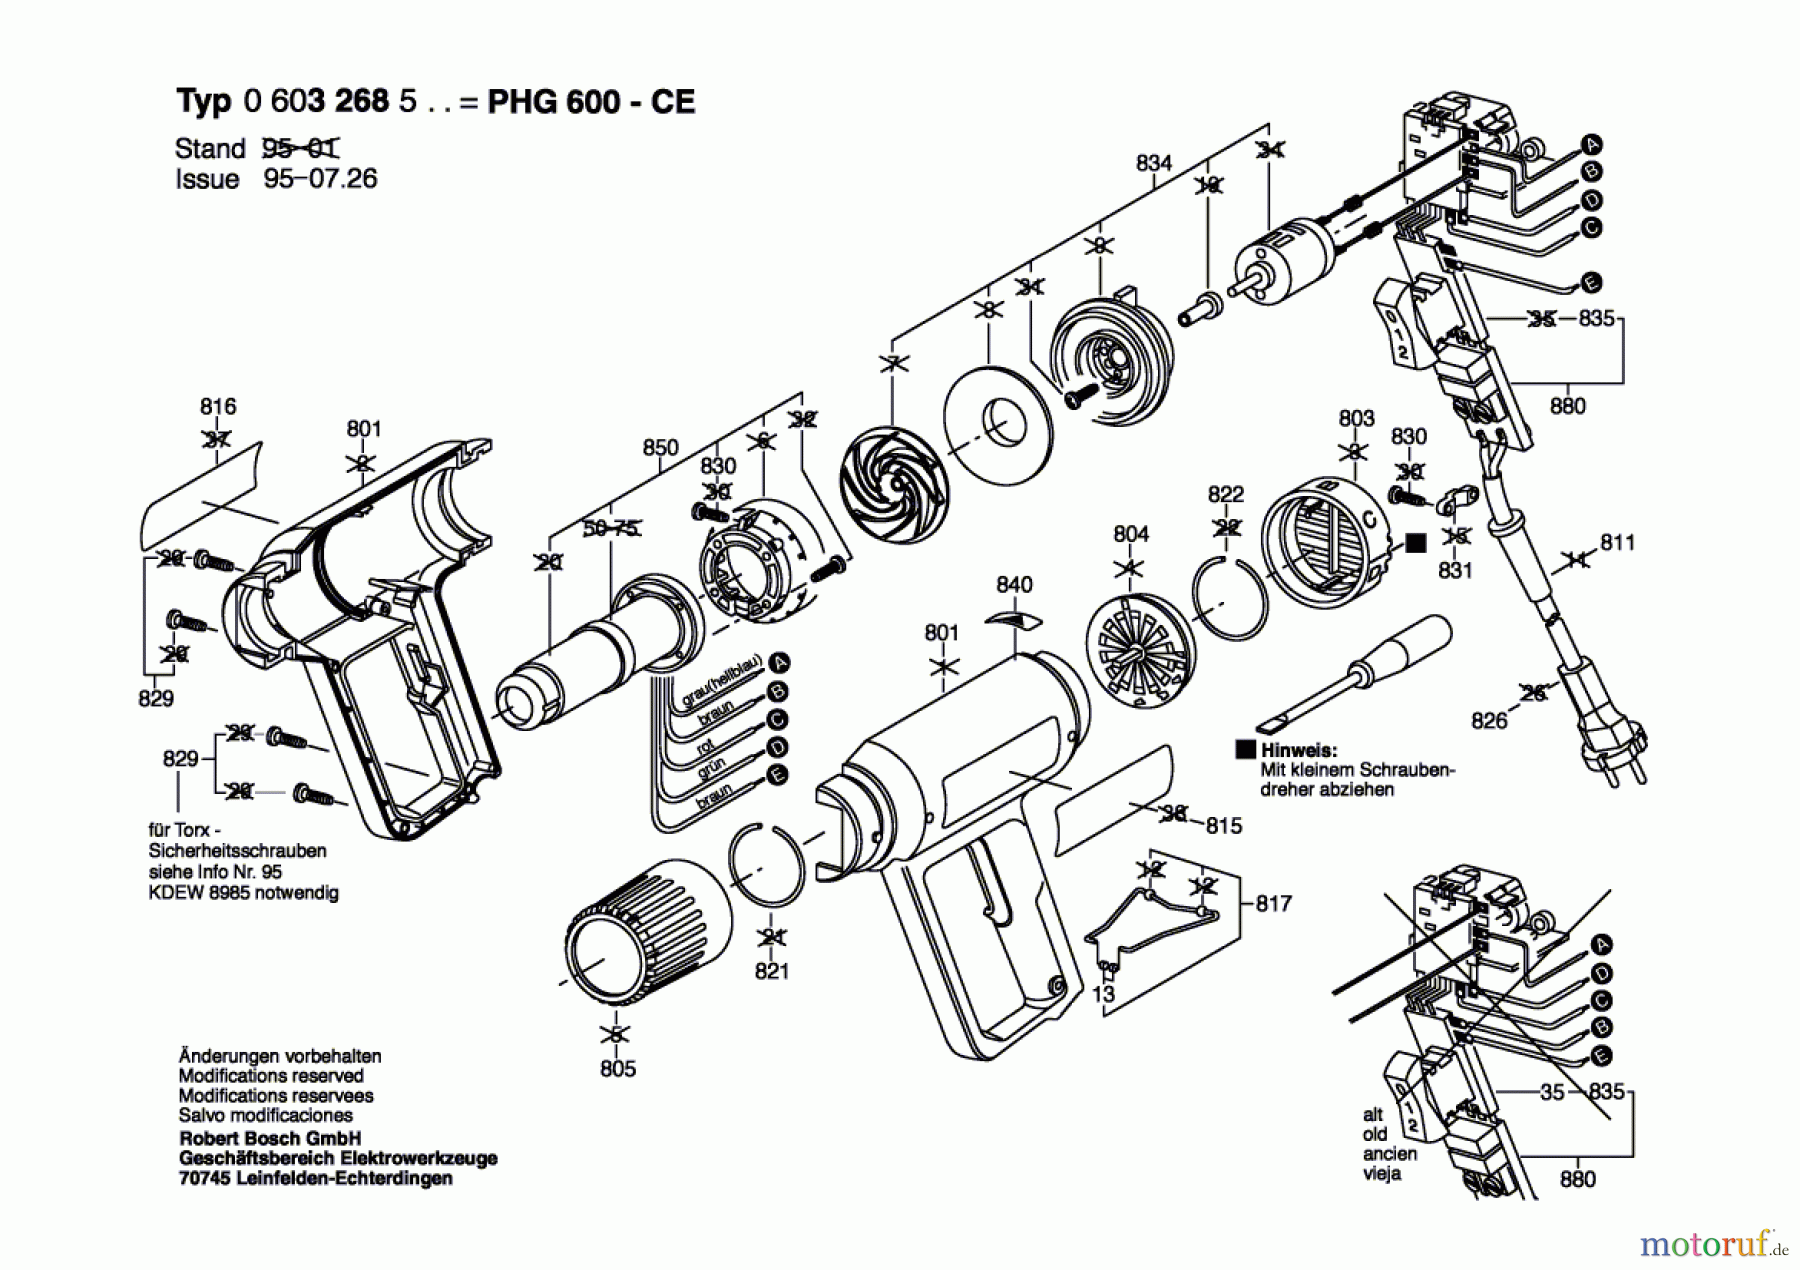  Bosch Werkzeug Heissluftgebläse PHG 600 CE Seite 1